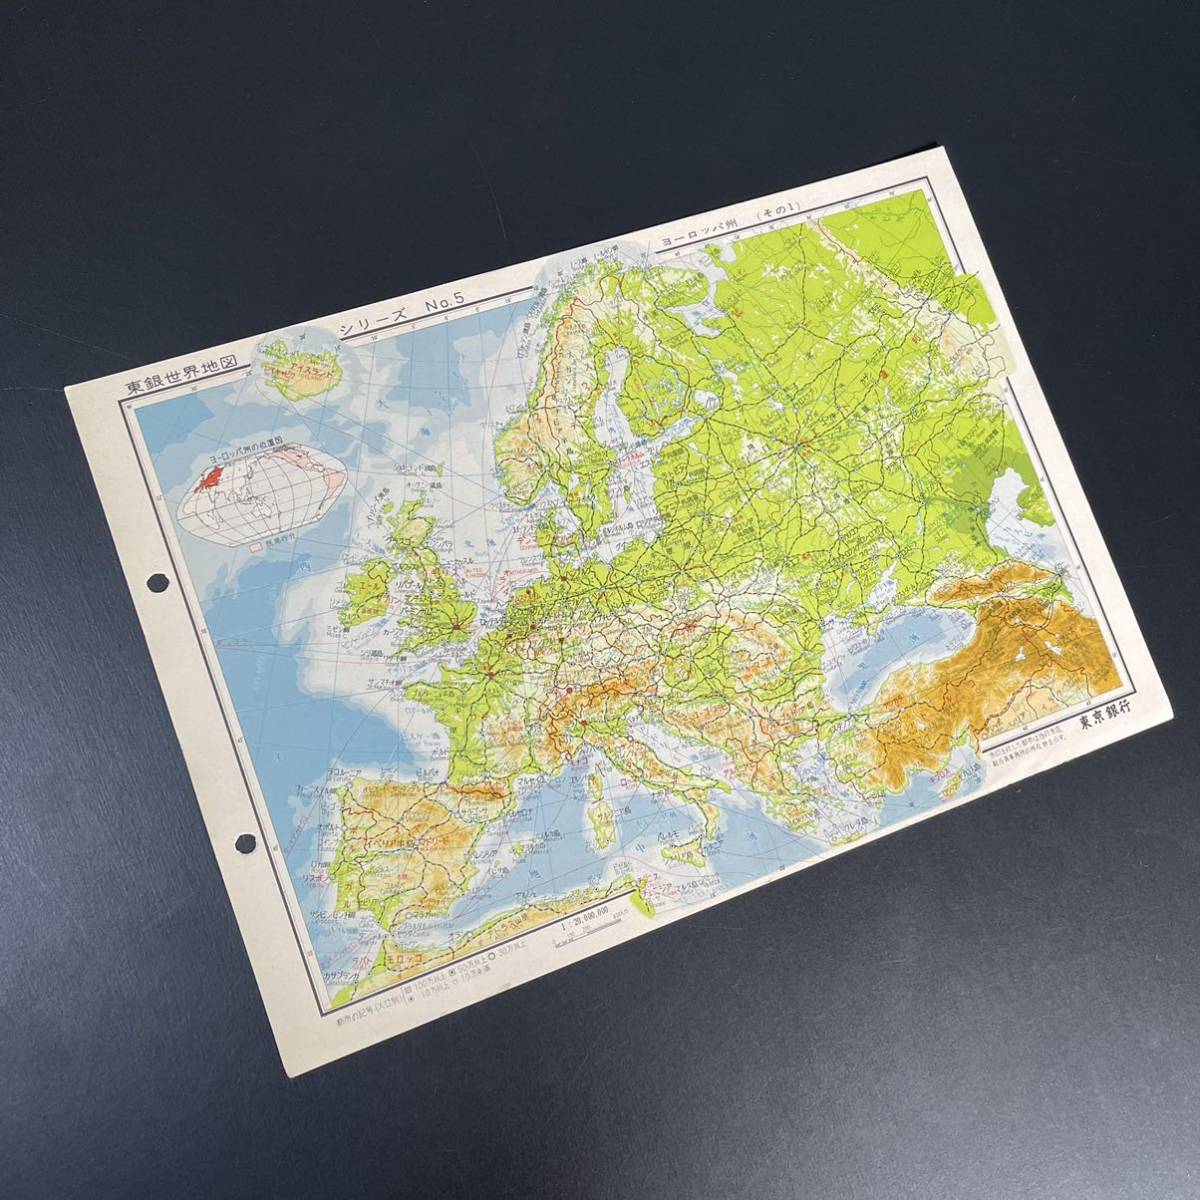 レア東銀世界地図シリーズ NO.5 昭和39年 ヨーロッパ地図 古地図 く 東京銀行 AH 昭和レトロ 一部予約 柔らかい アンティーク